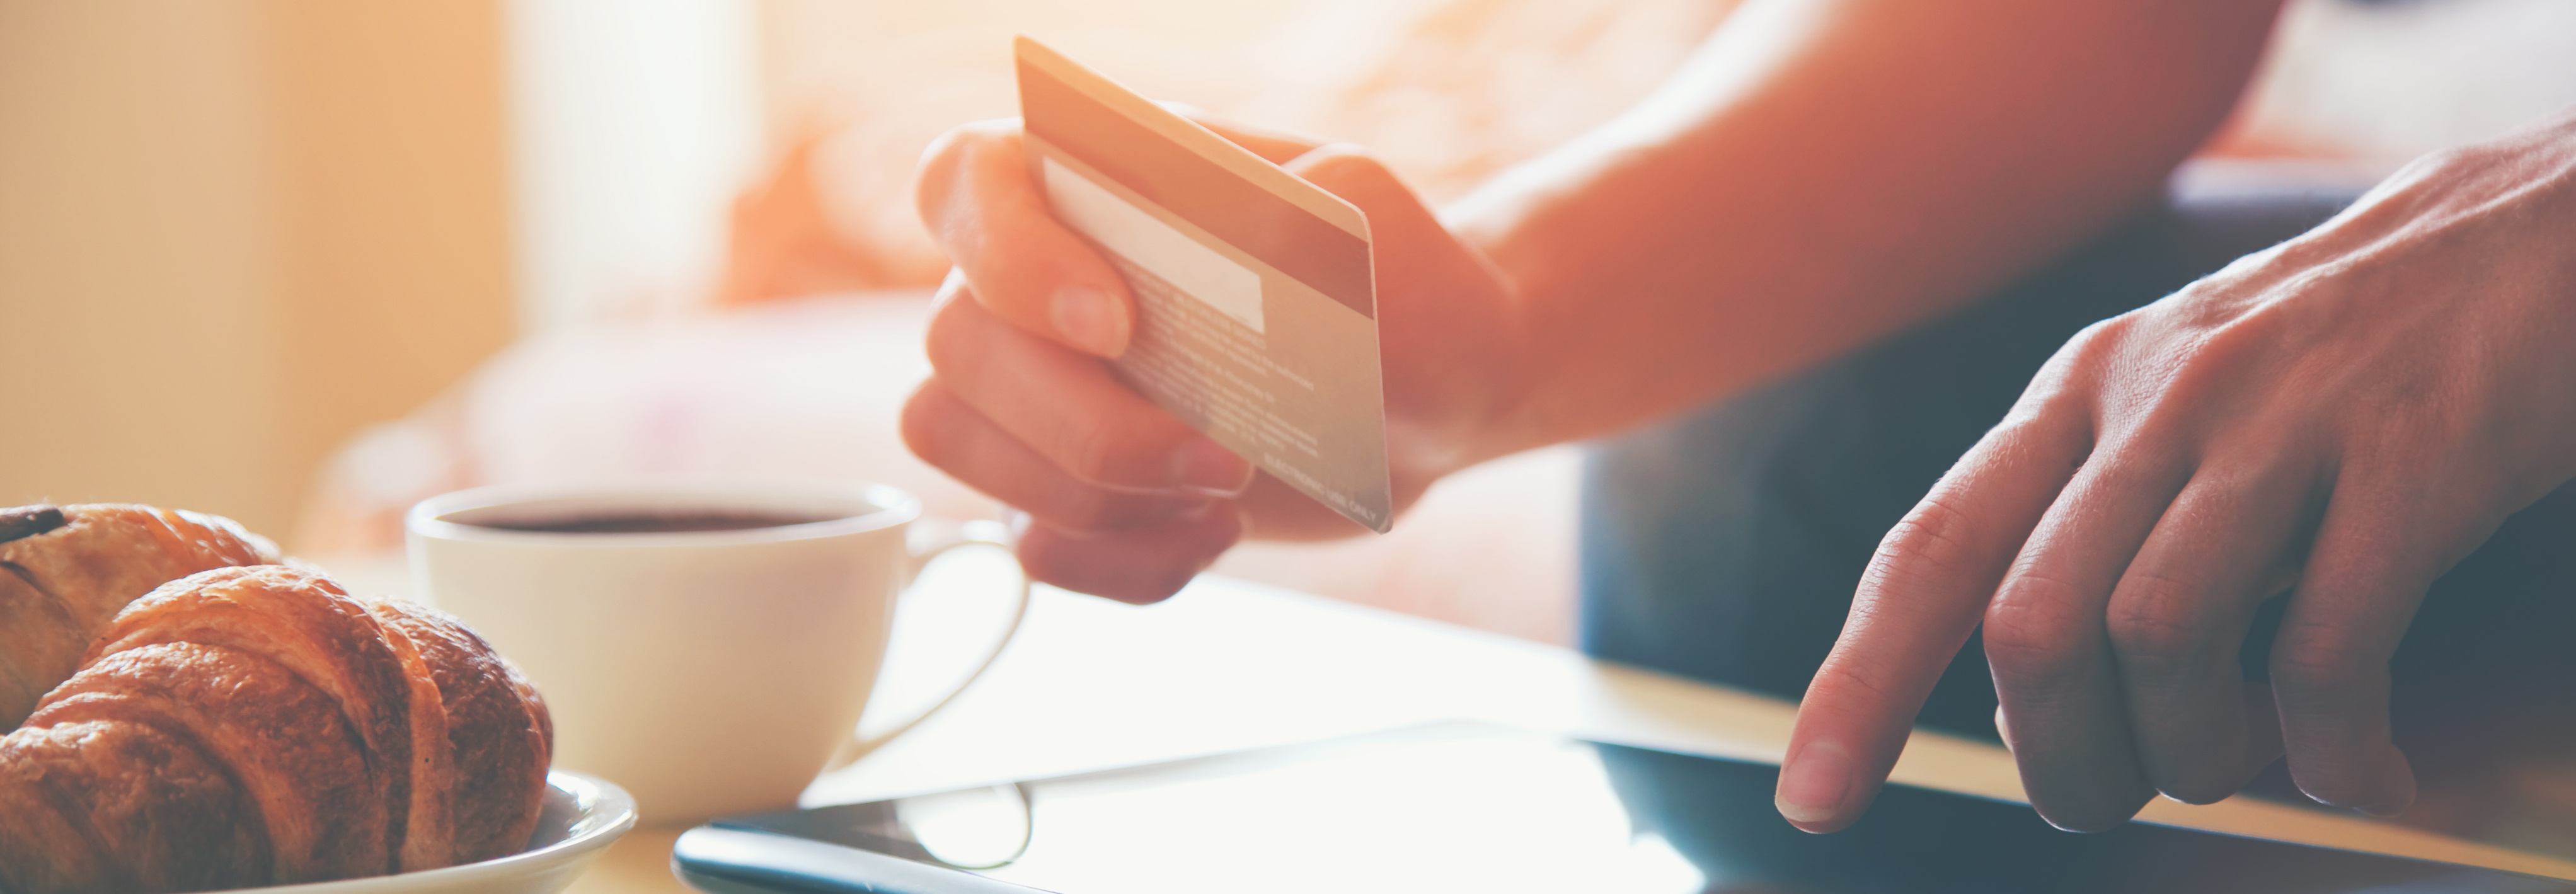 Tuổi tối thiểu để làm thẻ tín dụng BIDV là bao nhiêu?
